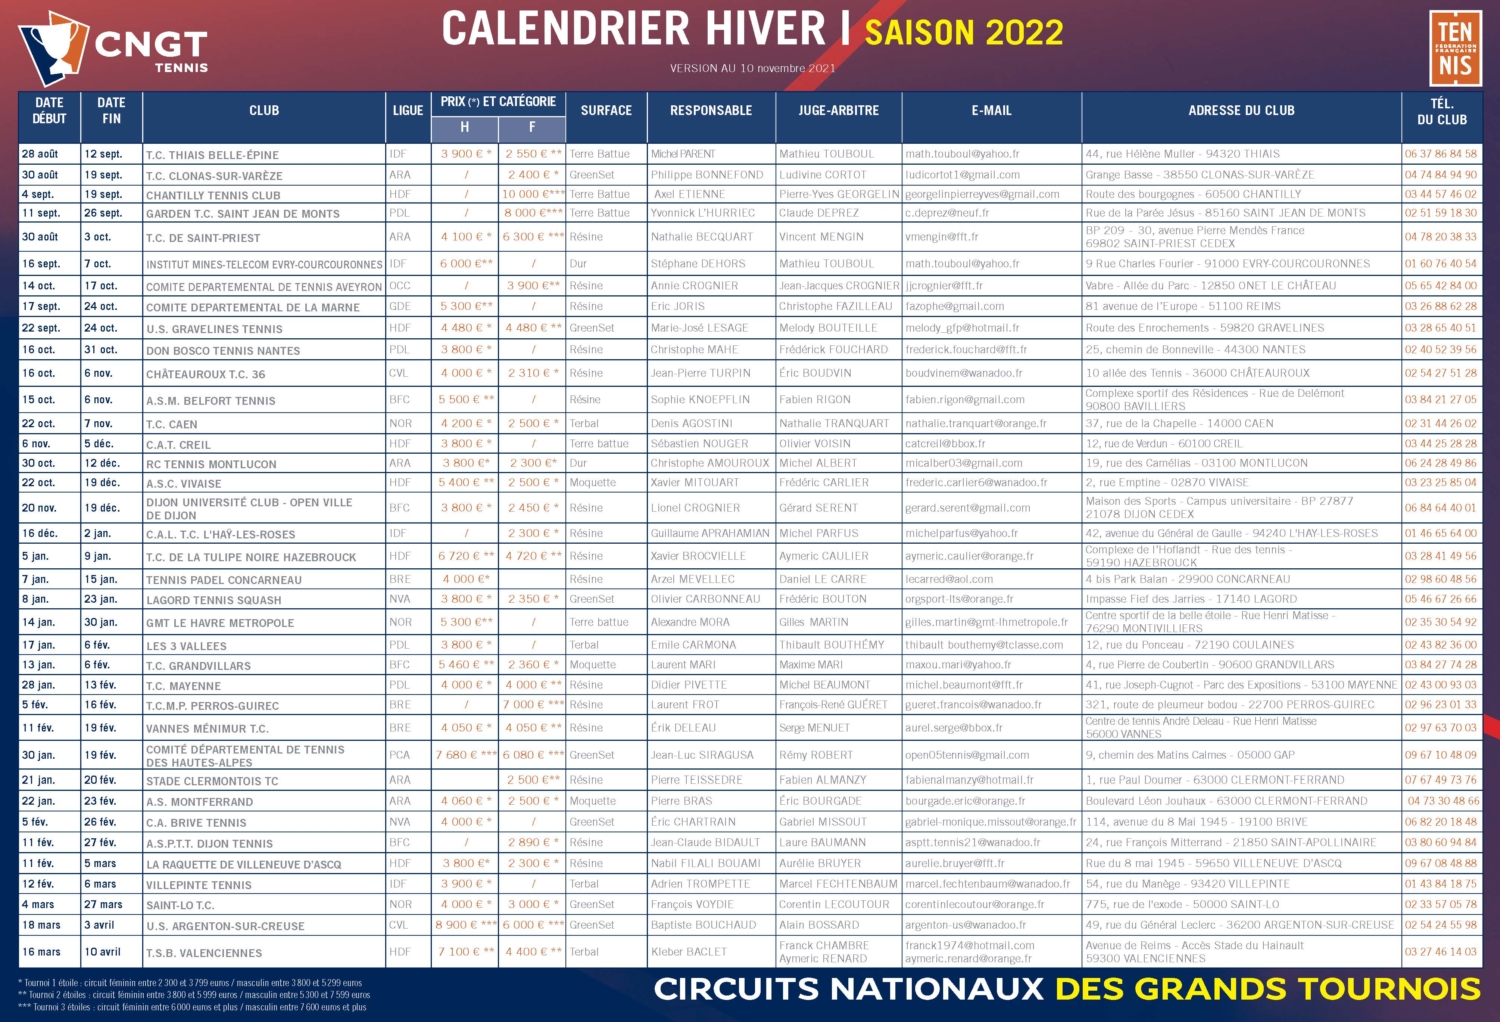 Calendrier CNGT hiver 2022 - Pro Elle Tennis